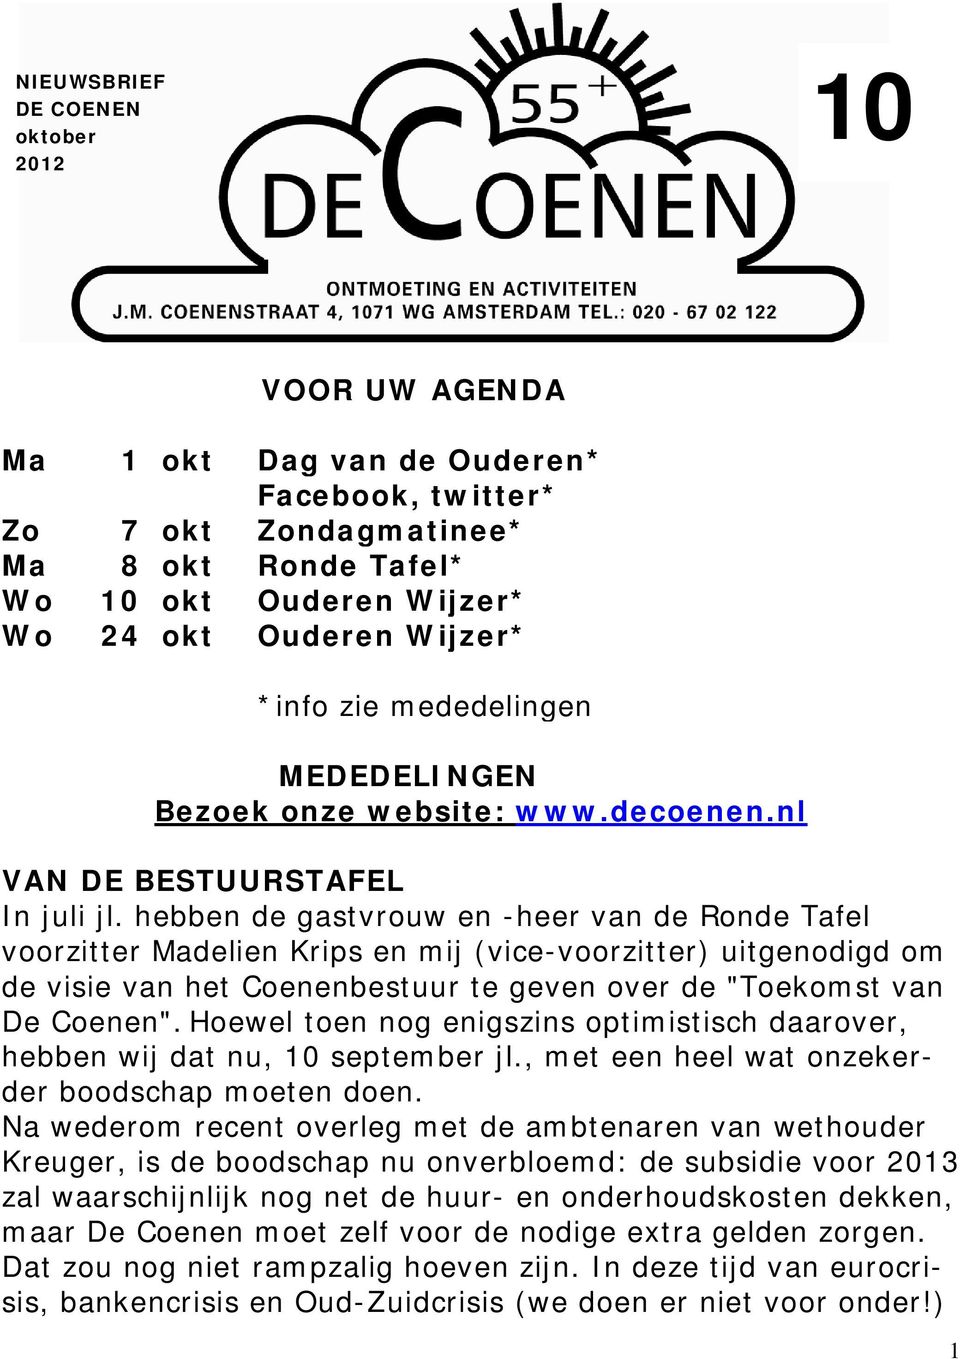 hebben de gastvrouw en -heer van de Ronde Tafel voorzitter Madelien Krips en mij (vice-voorzitter) uitgenodigd om de visie van het Coenenbestuur te geven over de "Toekomst van De Coenen".